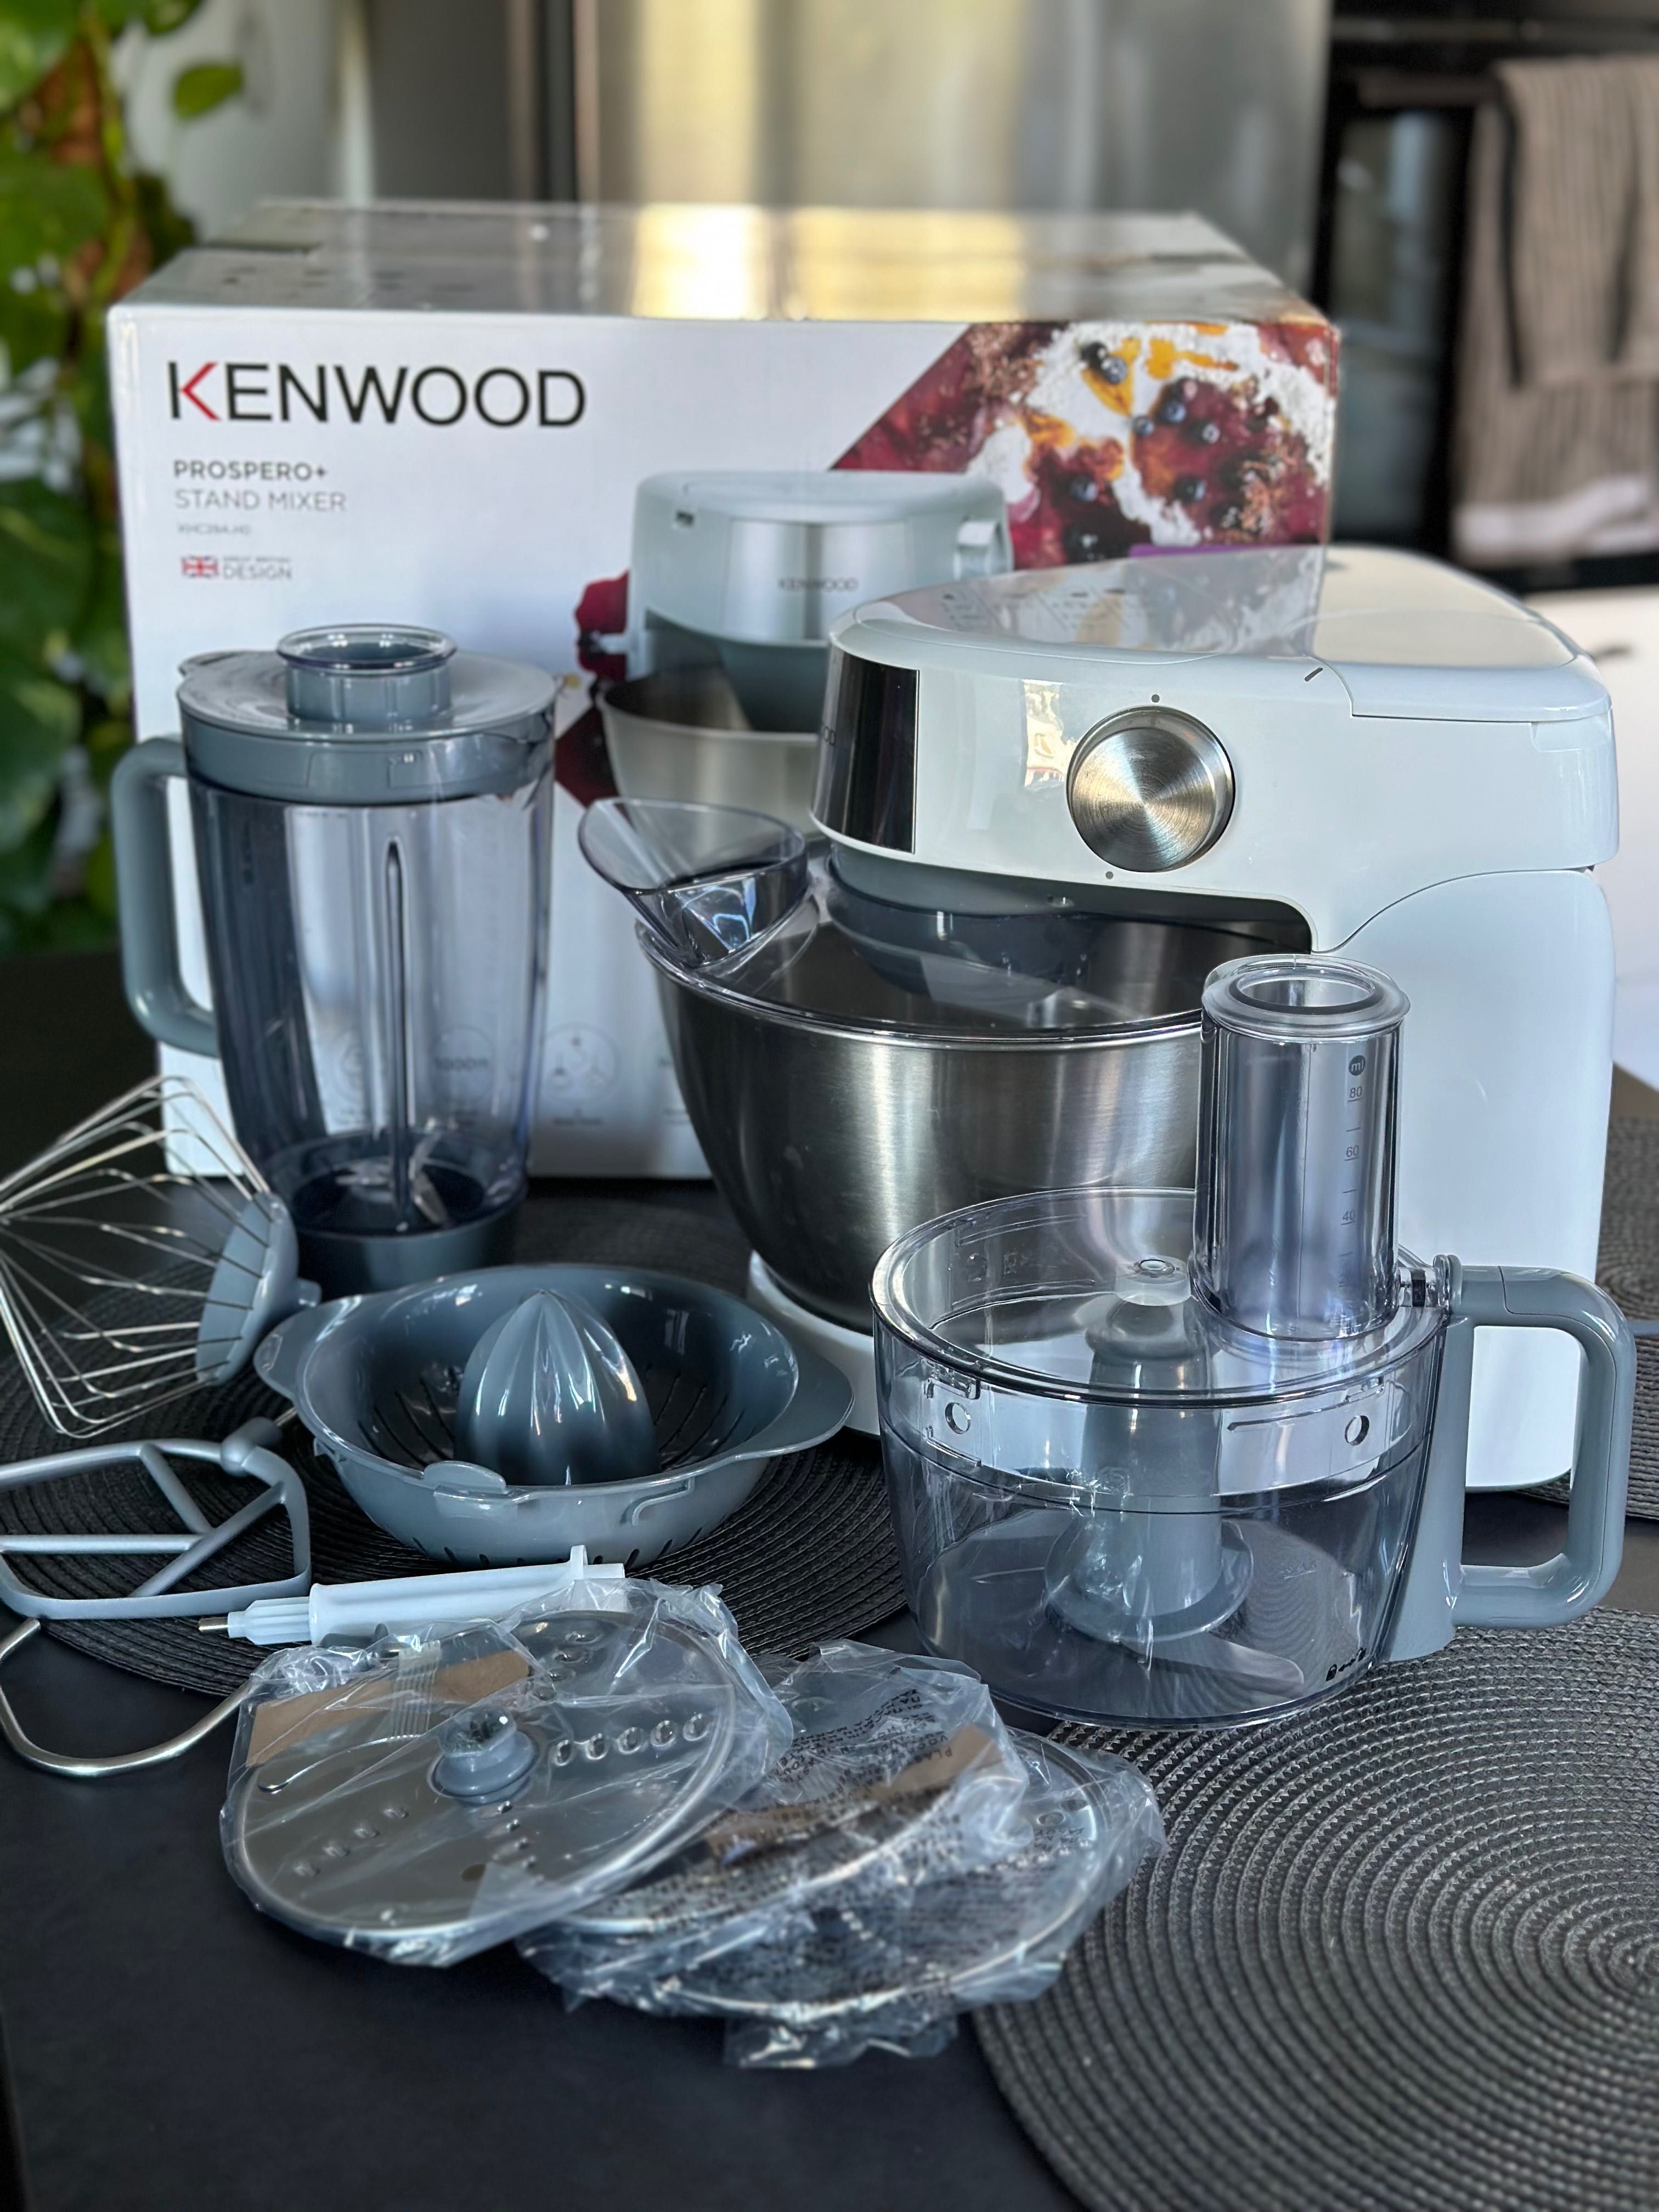 Kenwood Prospero+ 1000W robot kuchenny